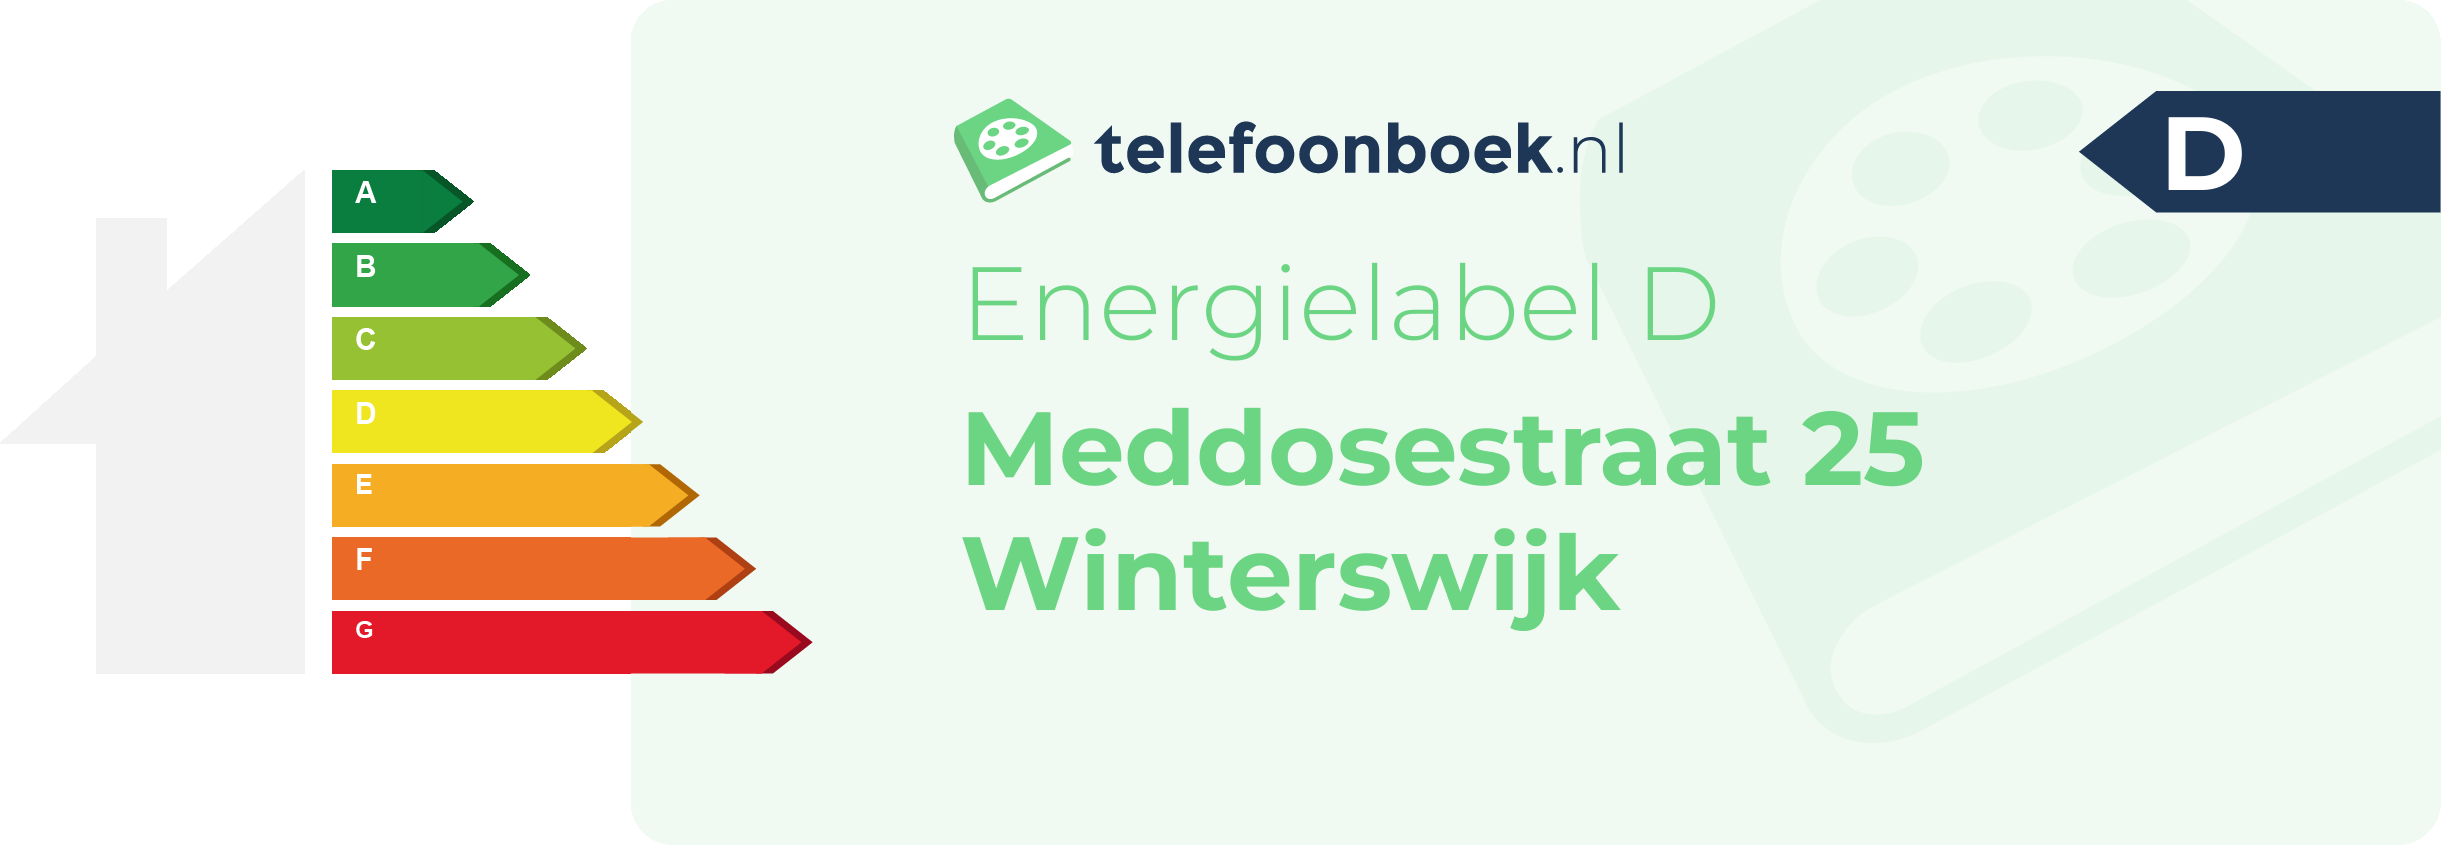 Energielabel Meddosestraat 25 Winterswijk